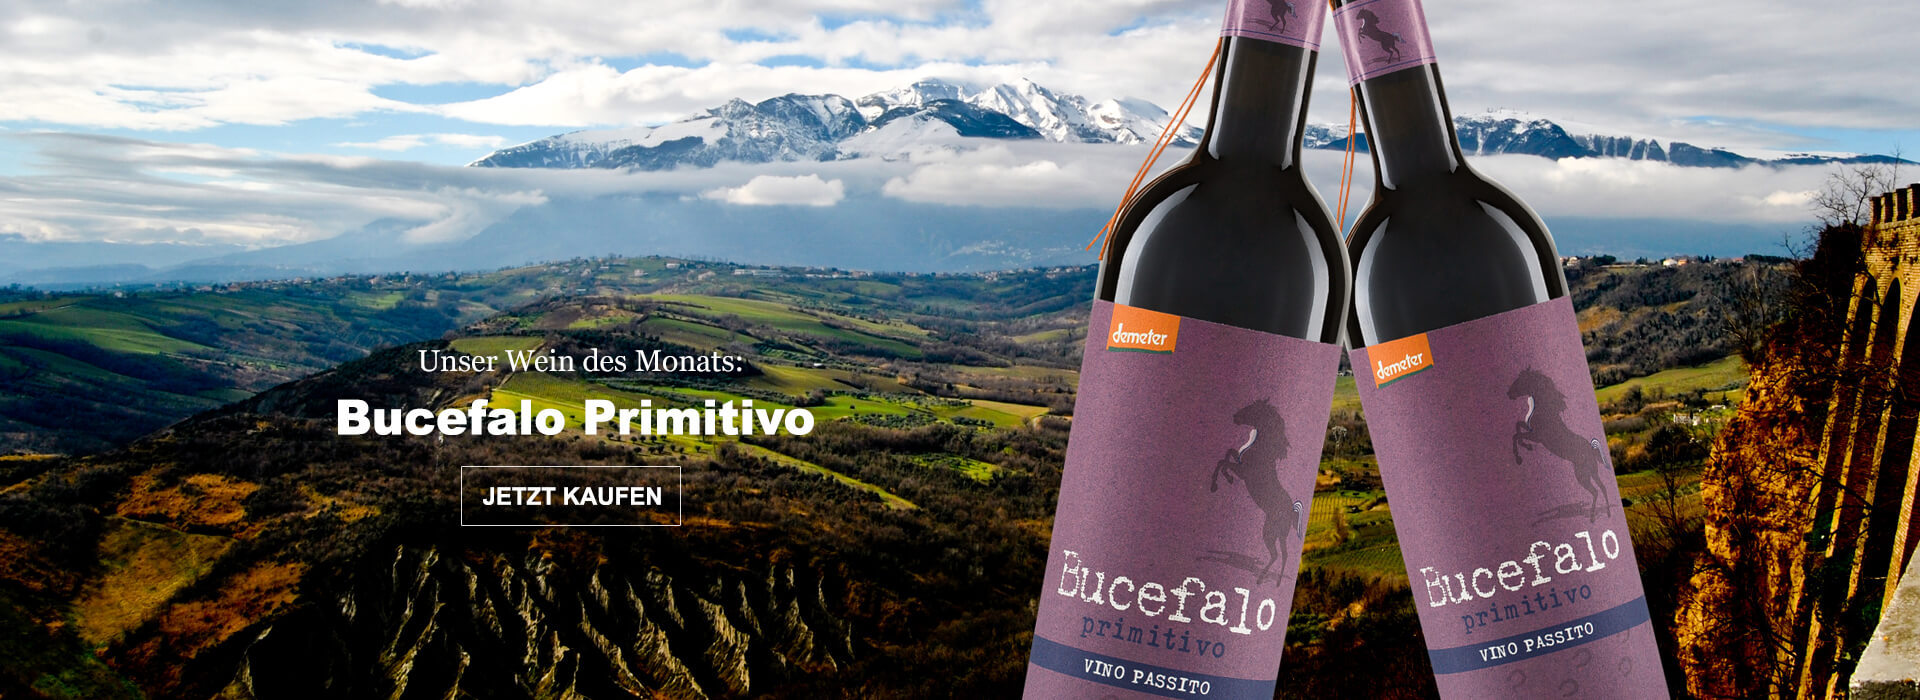 Unser Wein des Monats: Bucefalo Primitivo